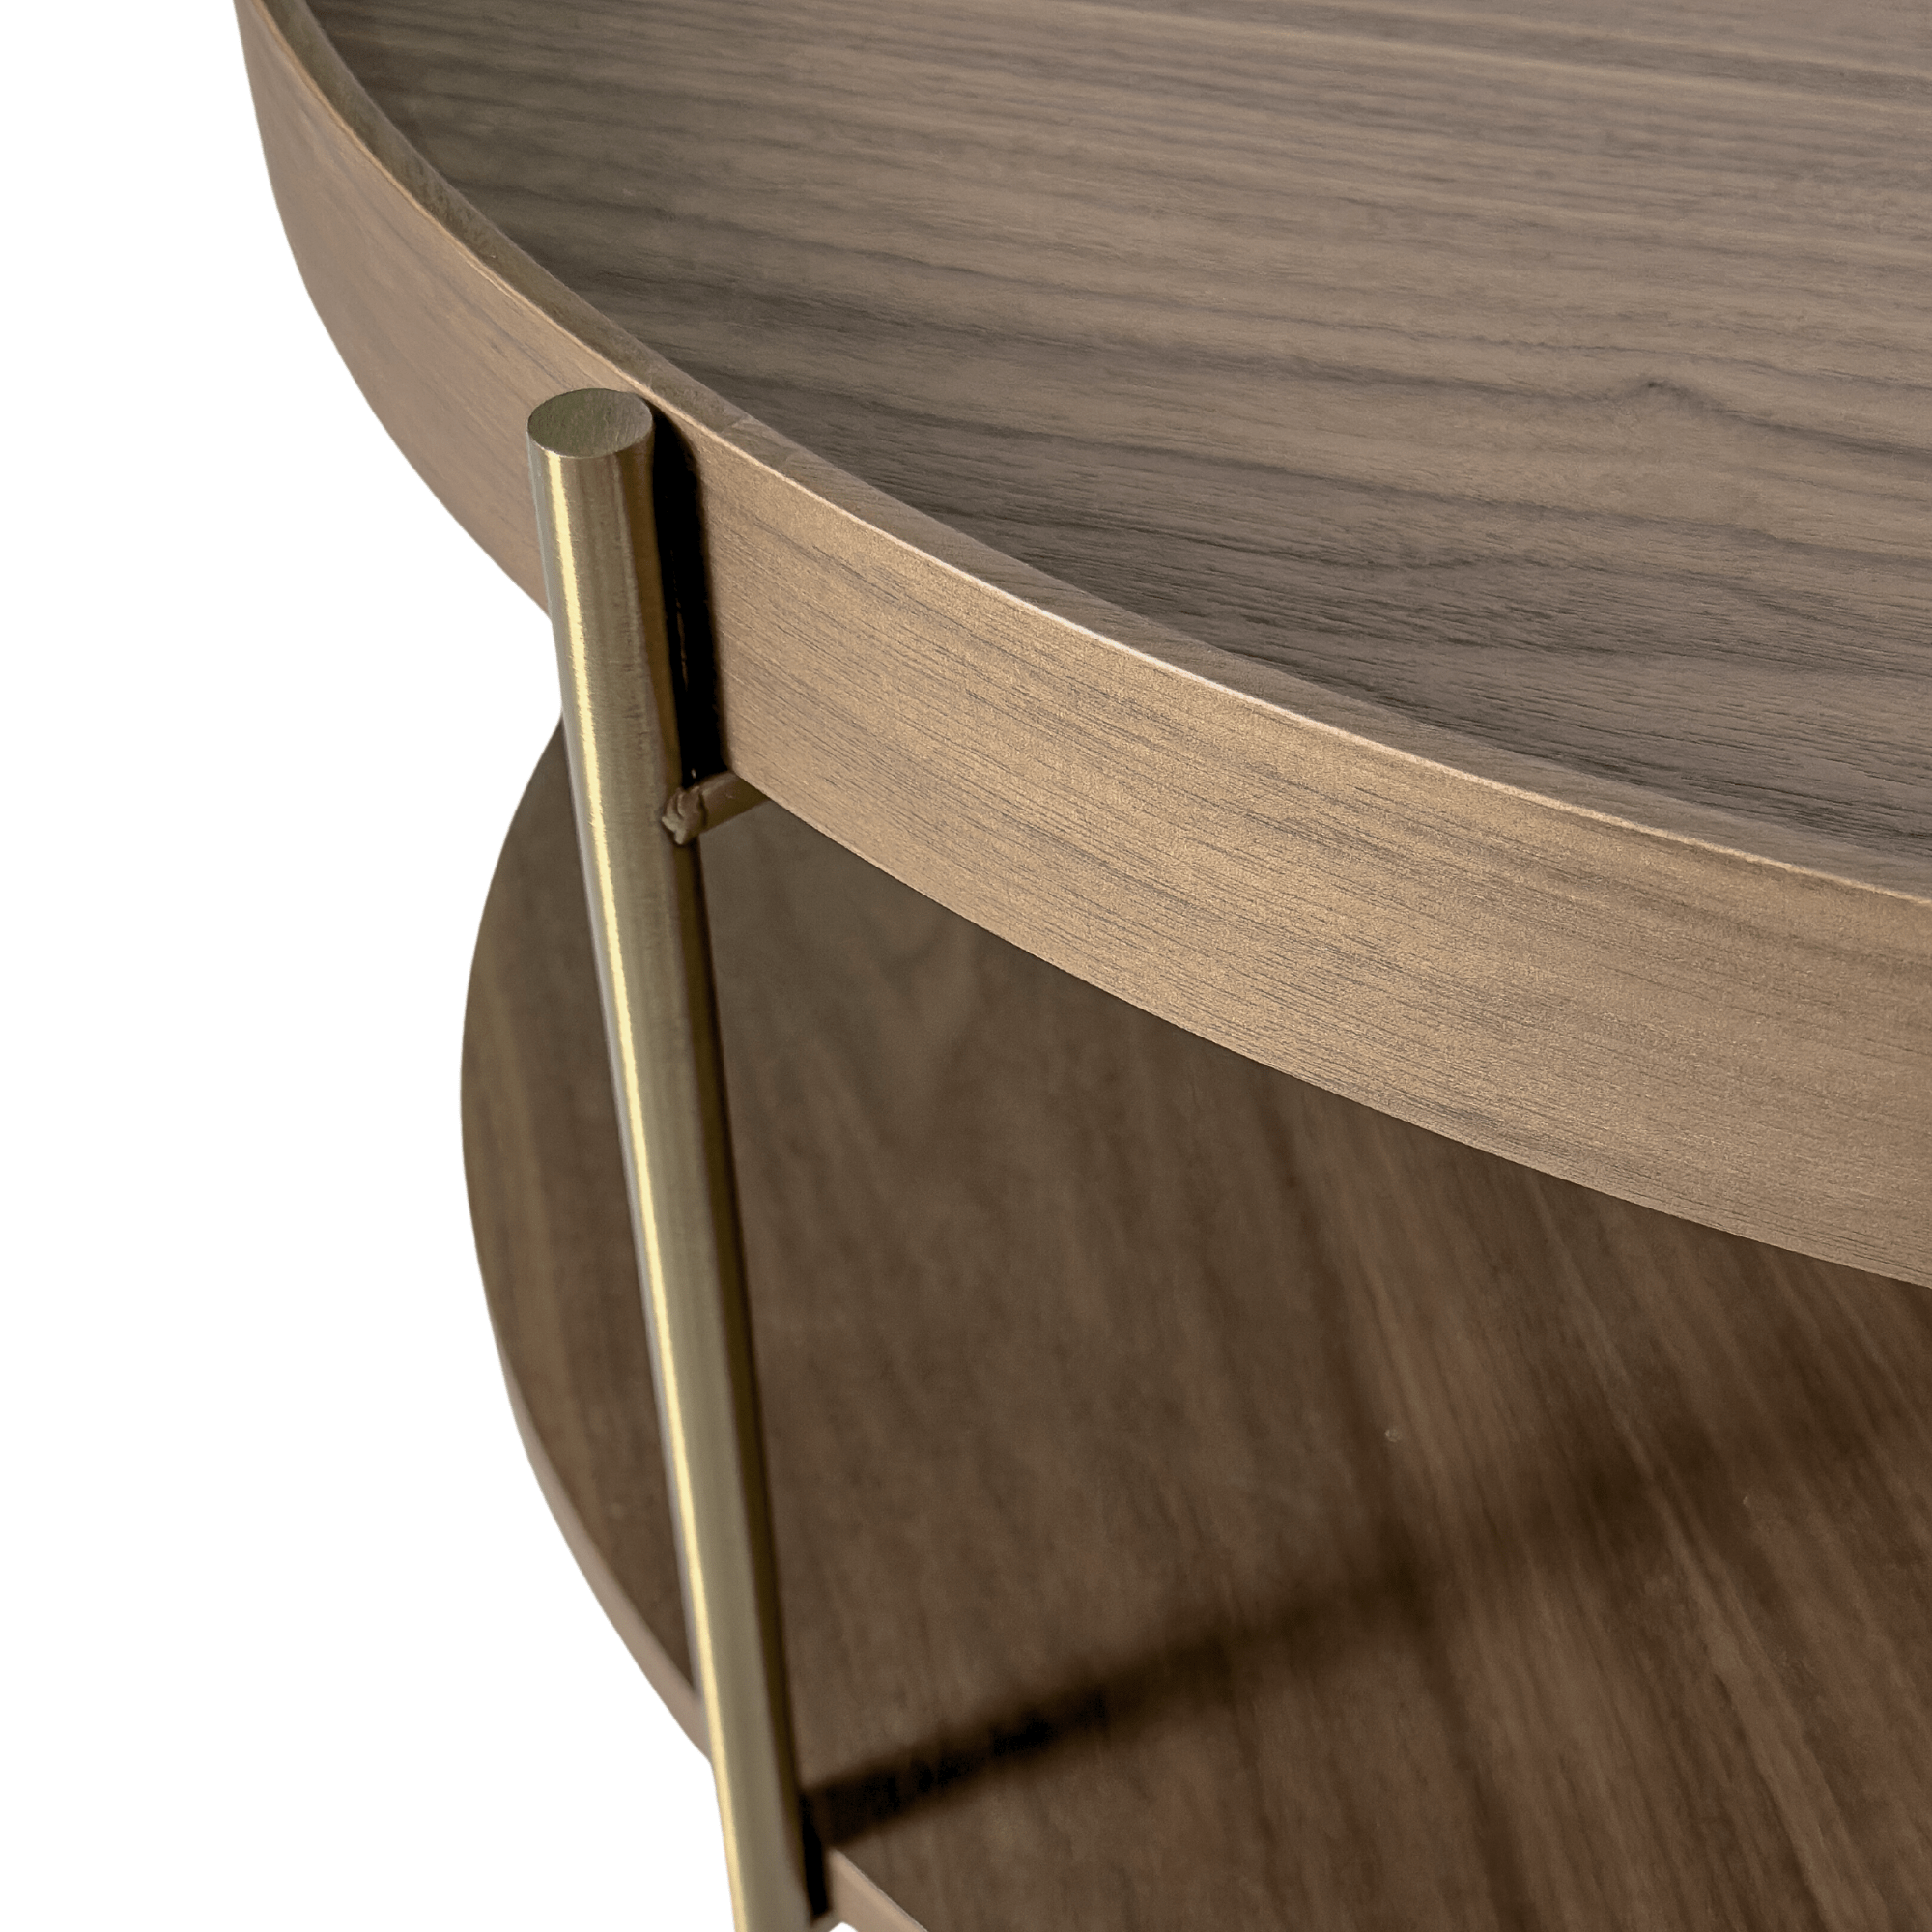 Seek & Ramble Coffee Tables Cleo 90cm Round Coffee Table Walnut & Gold Legs With Storage Shelf